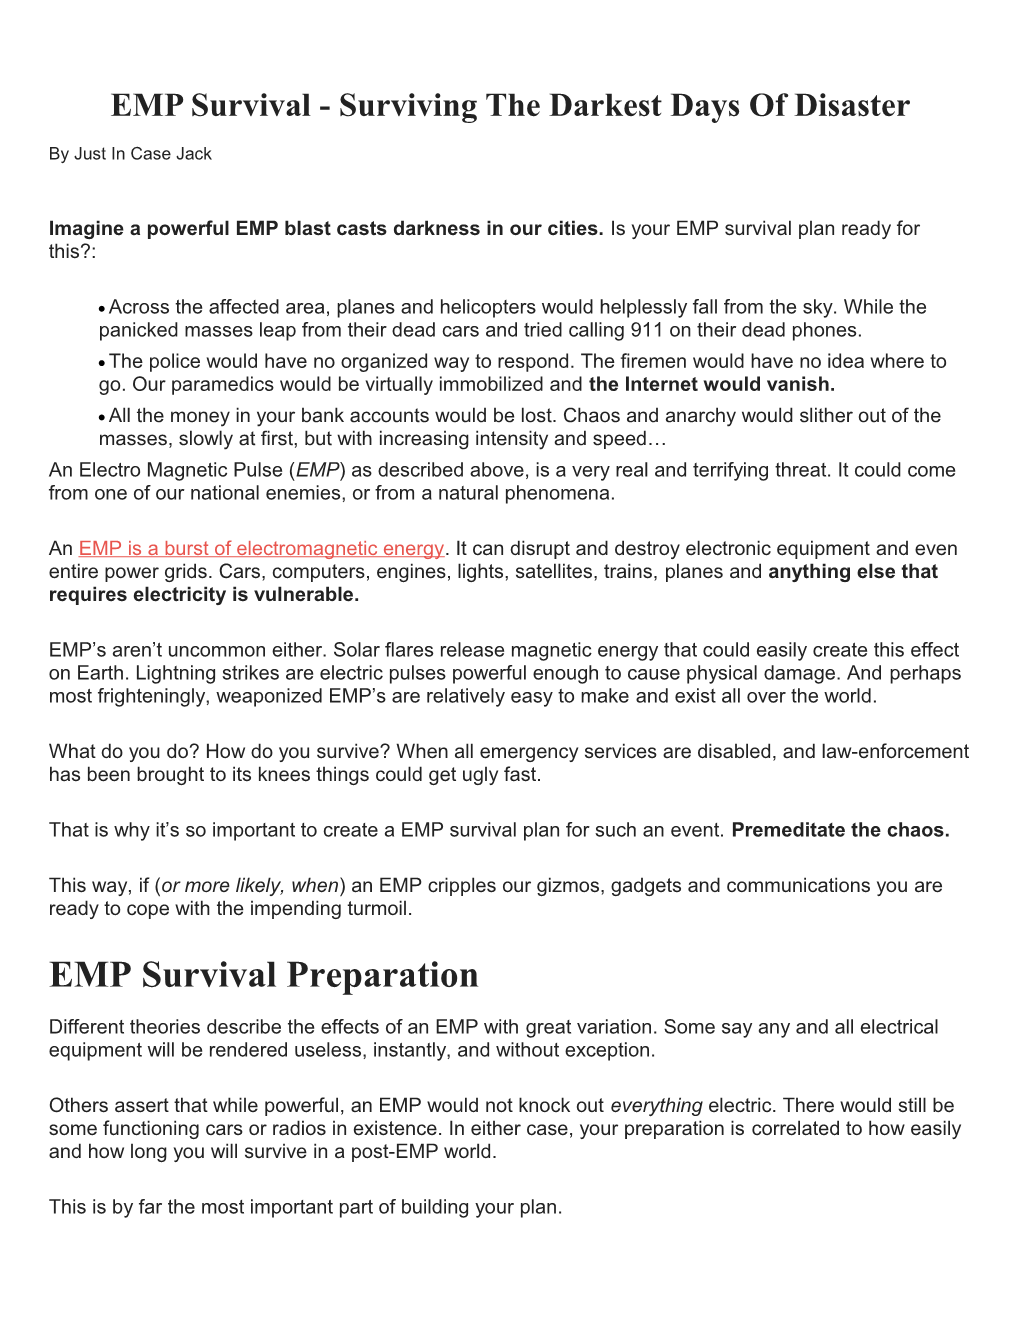 EMP Survival - Surviving the Darkest Days of Disaster